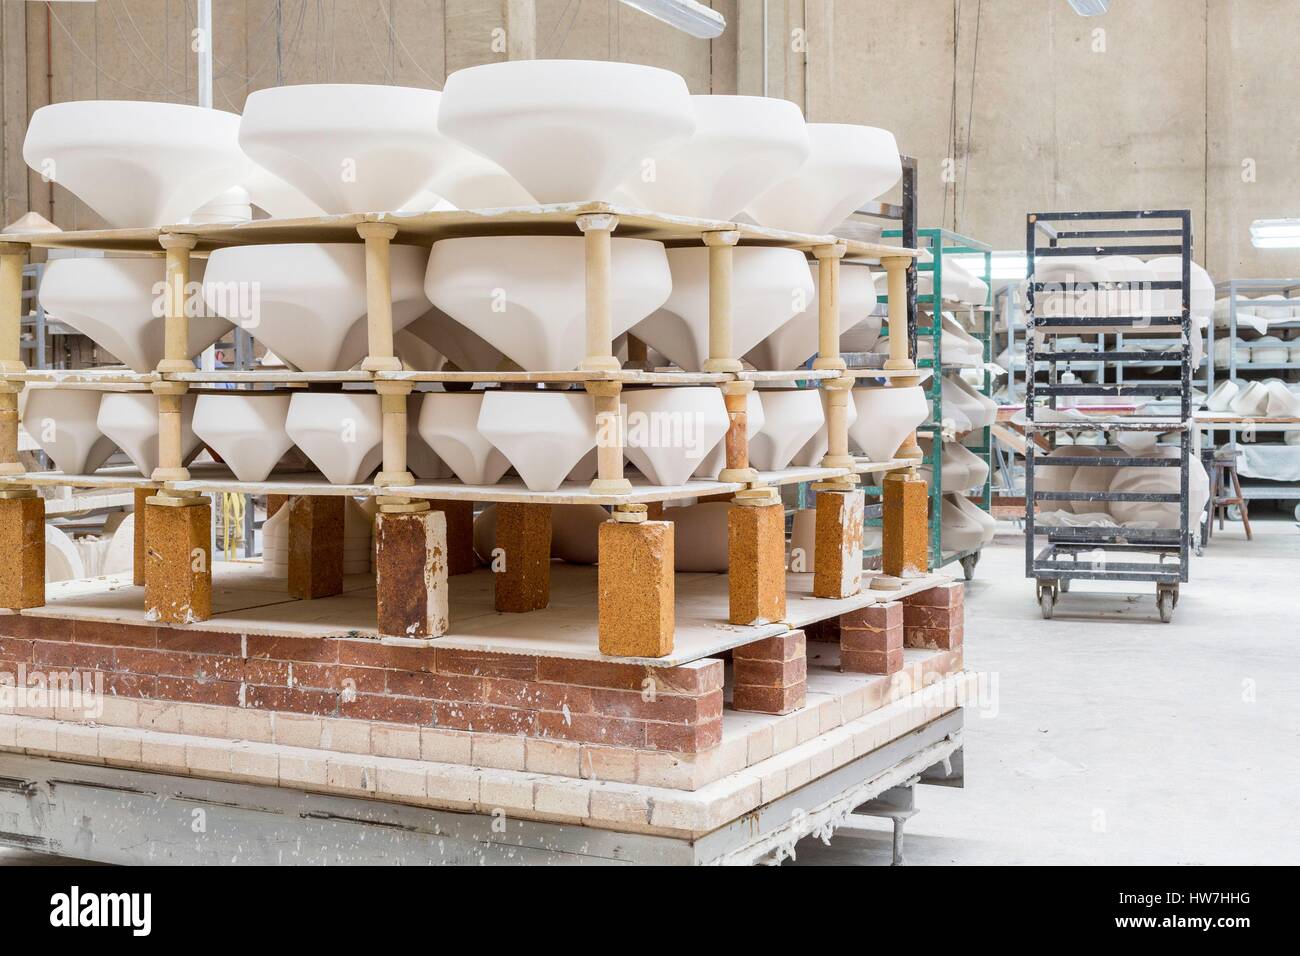 L'Espagne, la Catalogne, Rubi, atelier de céramique Apparatu fondée par Joan Manosa, la préparation avant la cuisson du pli fort Marset fabriqués pour la marque lampes Banque D'Images